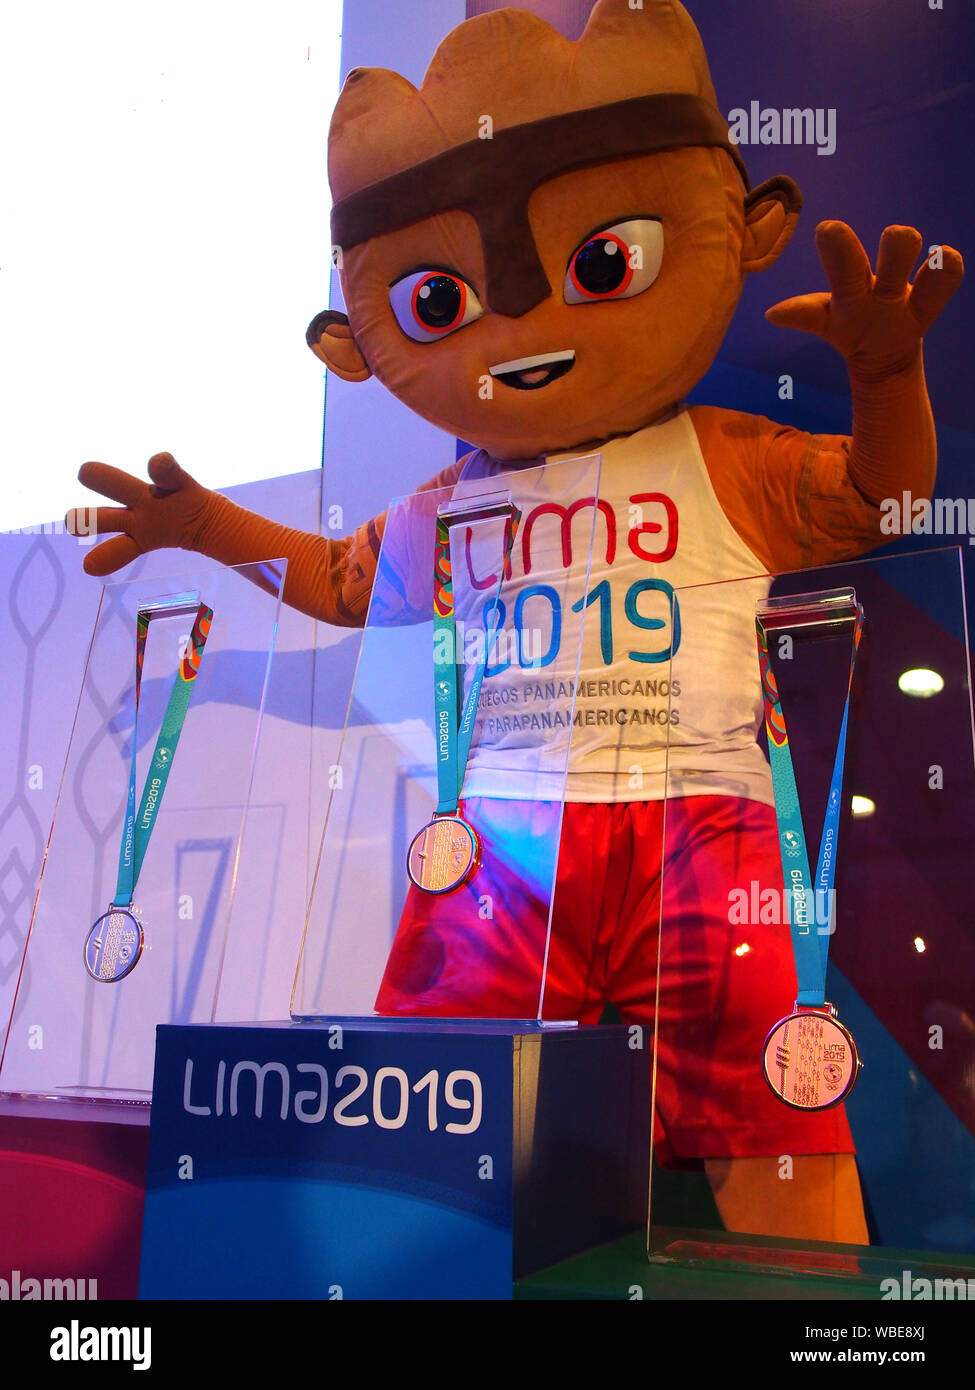 Milco, la mascota, y las medallas de los juegos Panamericanos. El diario de  medallas de oro, plata y cobre para la Pan American y Juegos  Parapanamericanos Lima 2019, proporcionados por la Sociedad